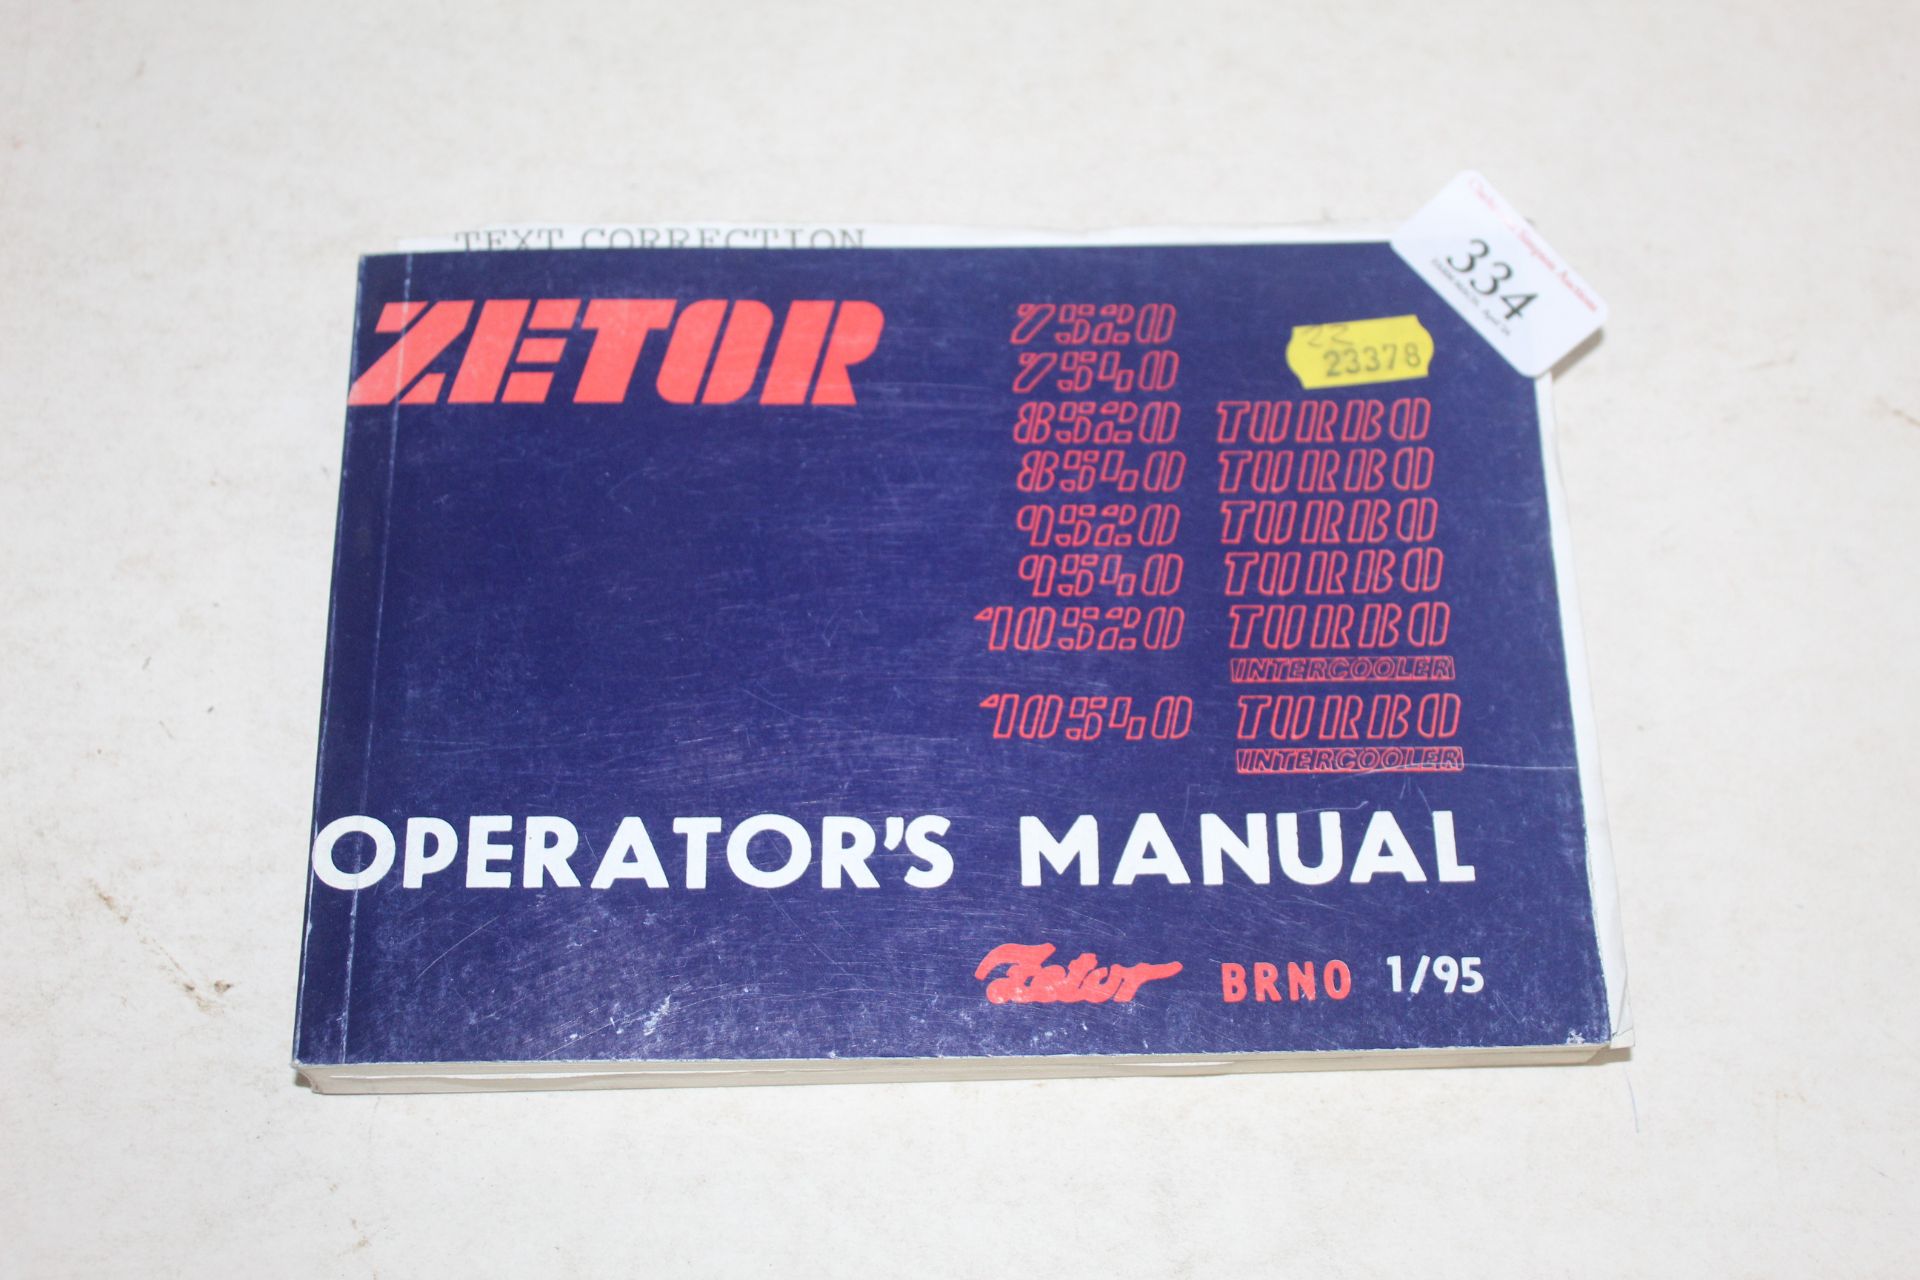 Zetor 7520-10540 Tractor Operators Manual.